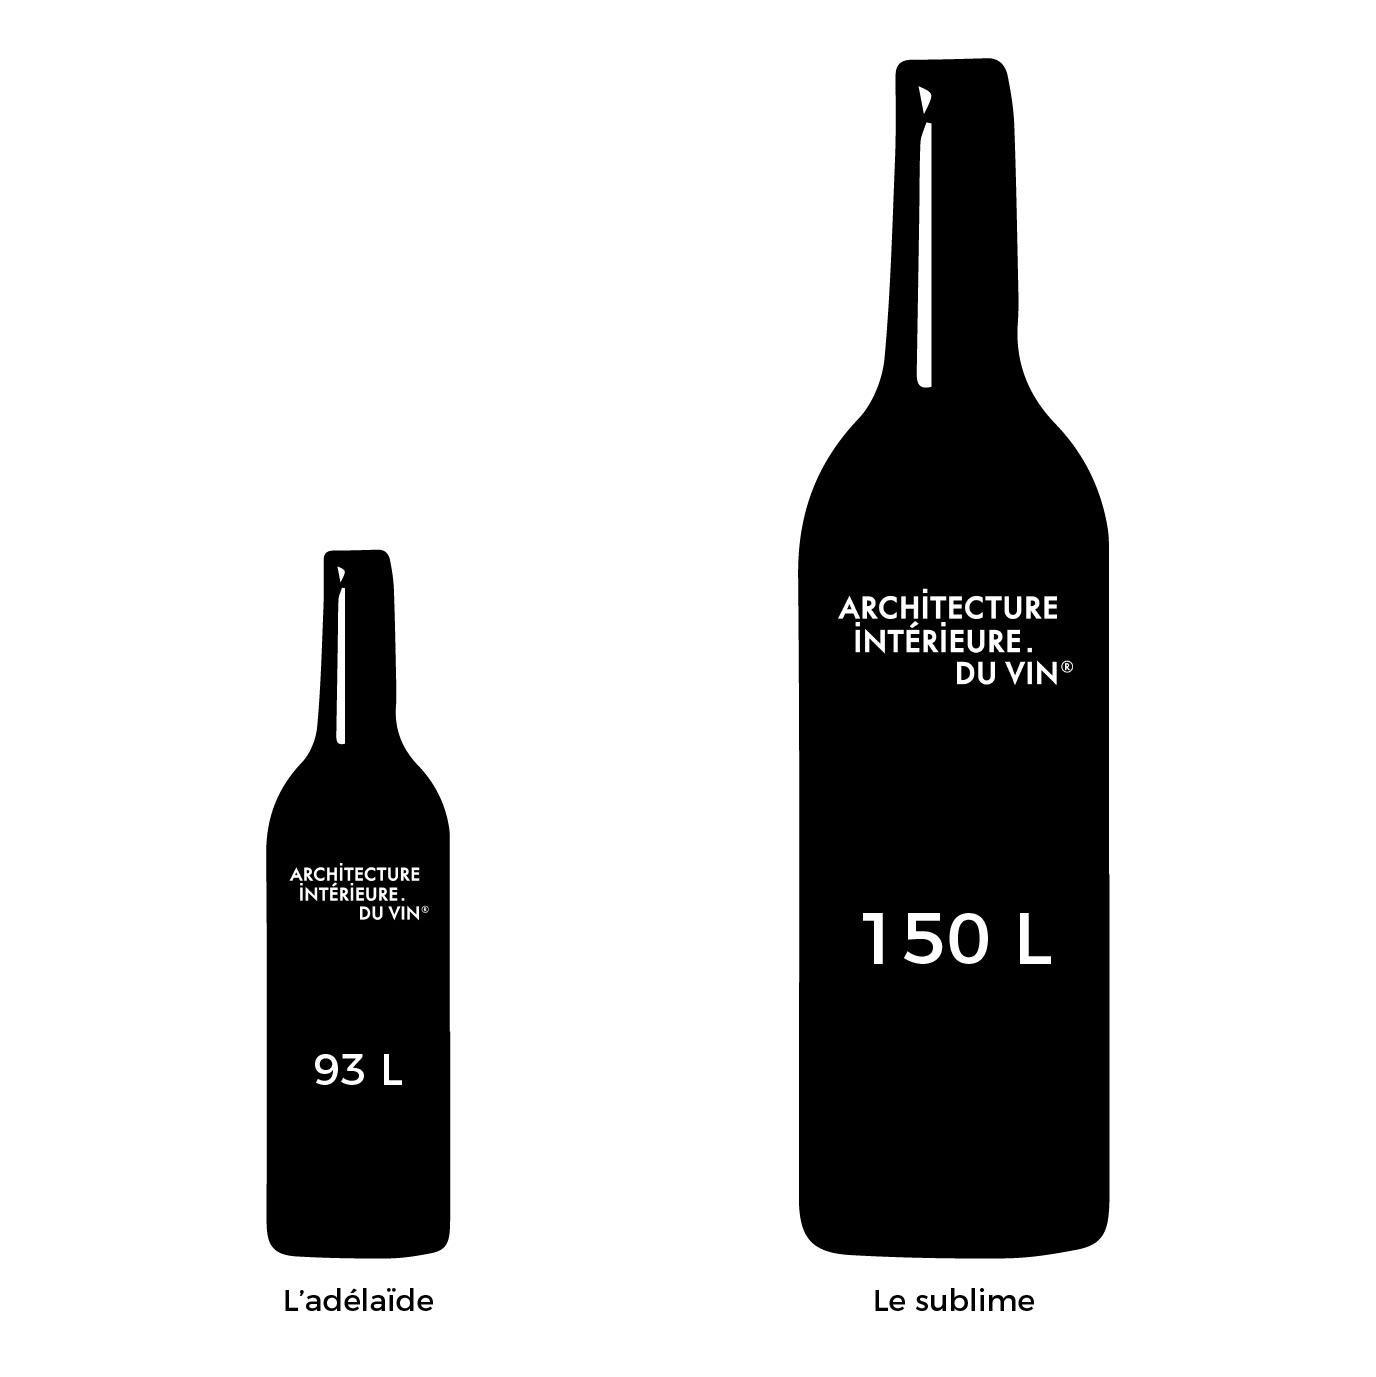 Les tailles de bouteilles de Vin